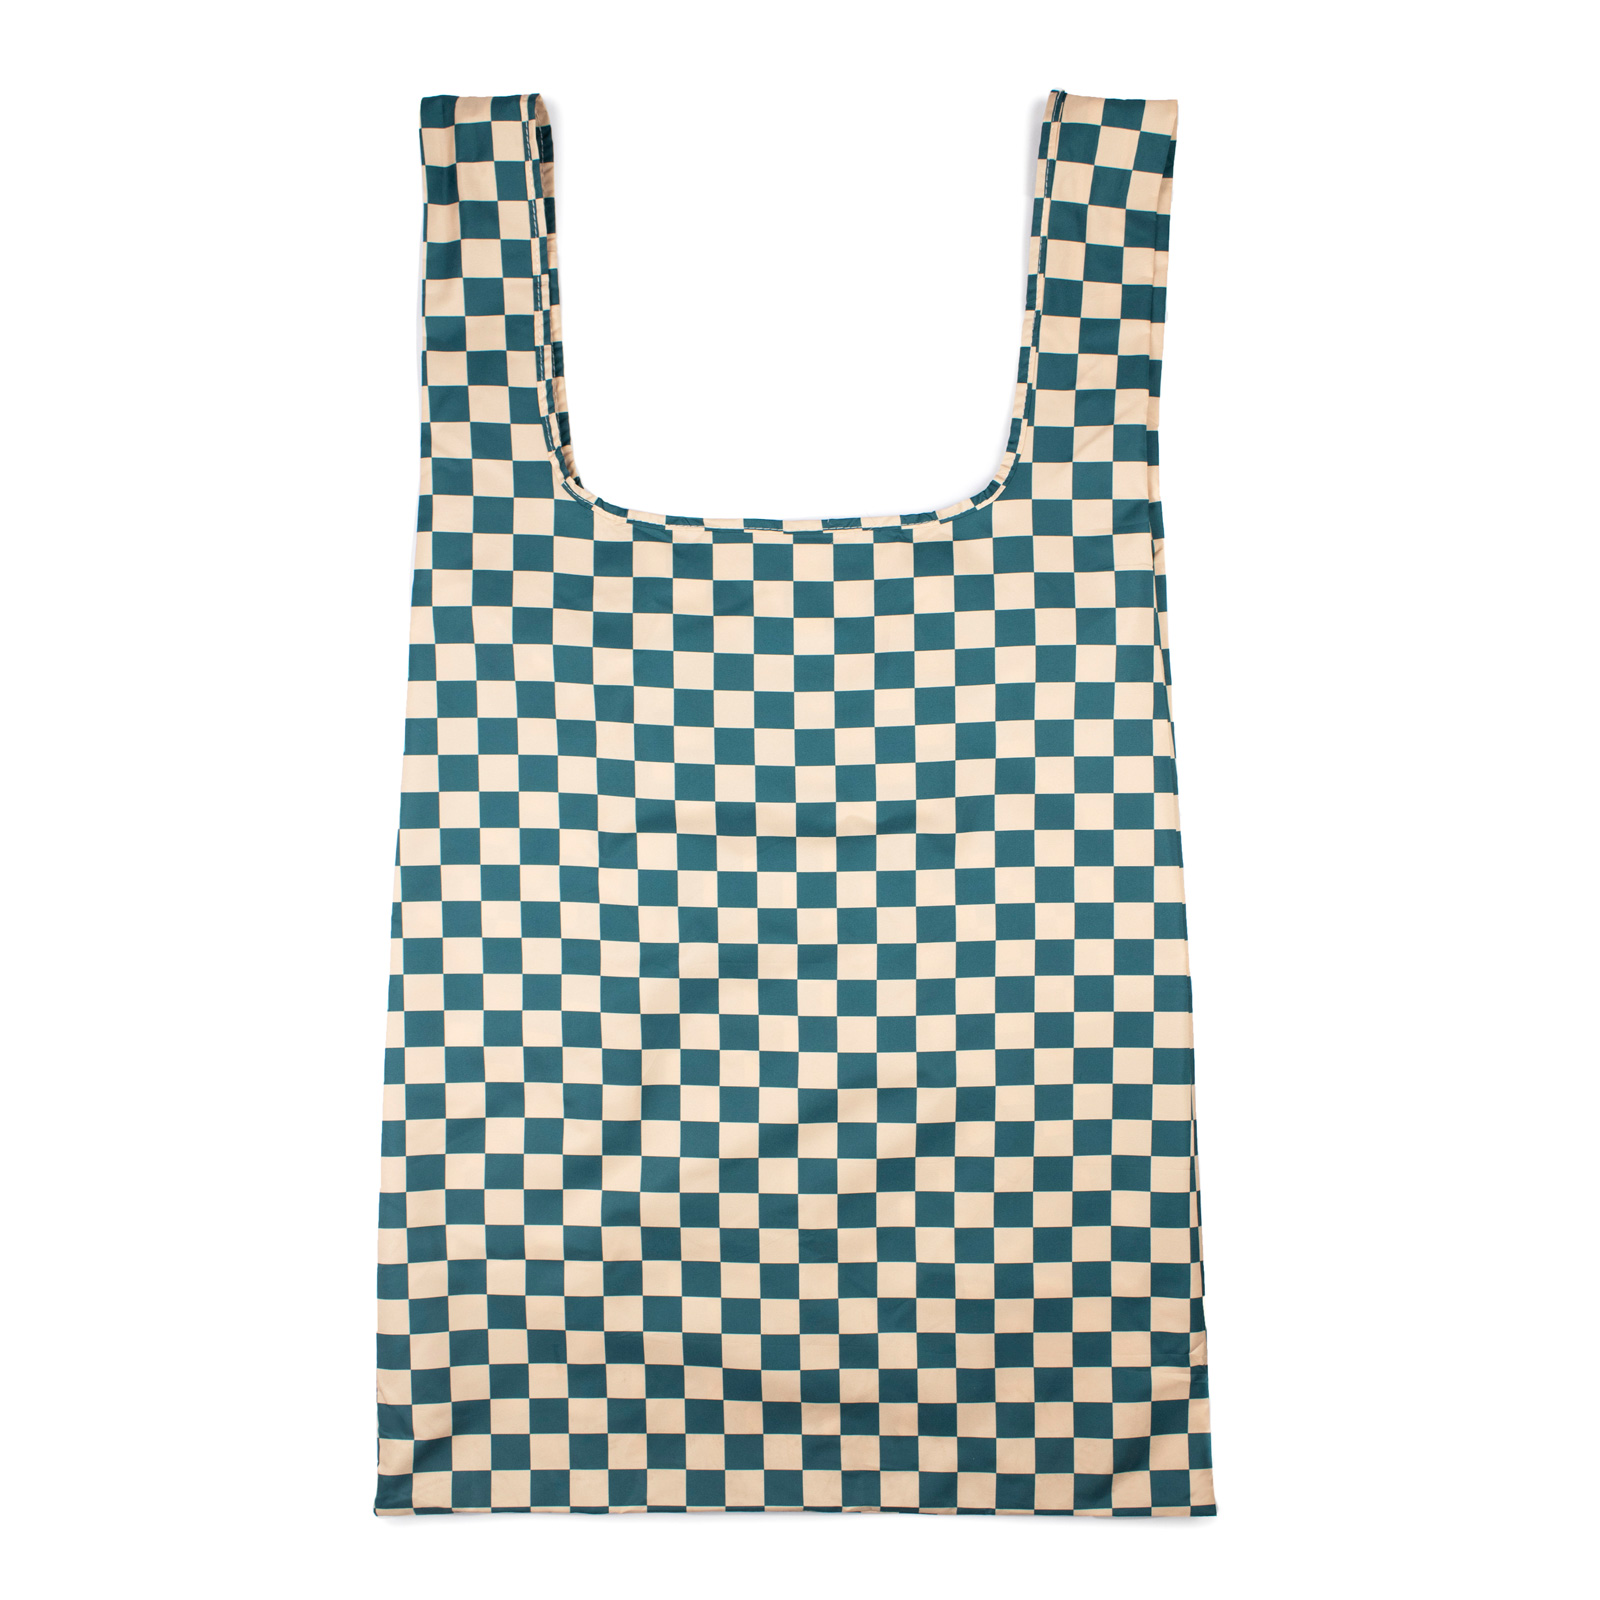 XL Bag Checkerb. Teal & Beige 